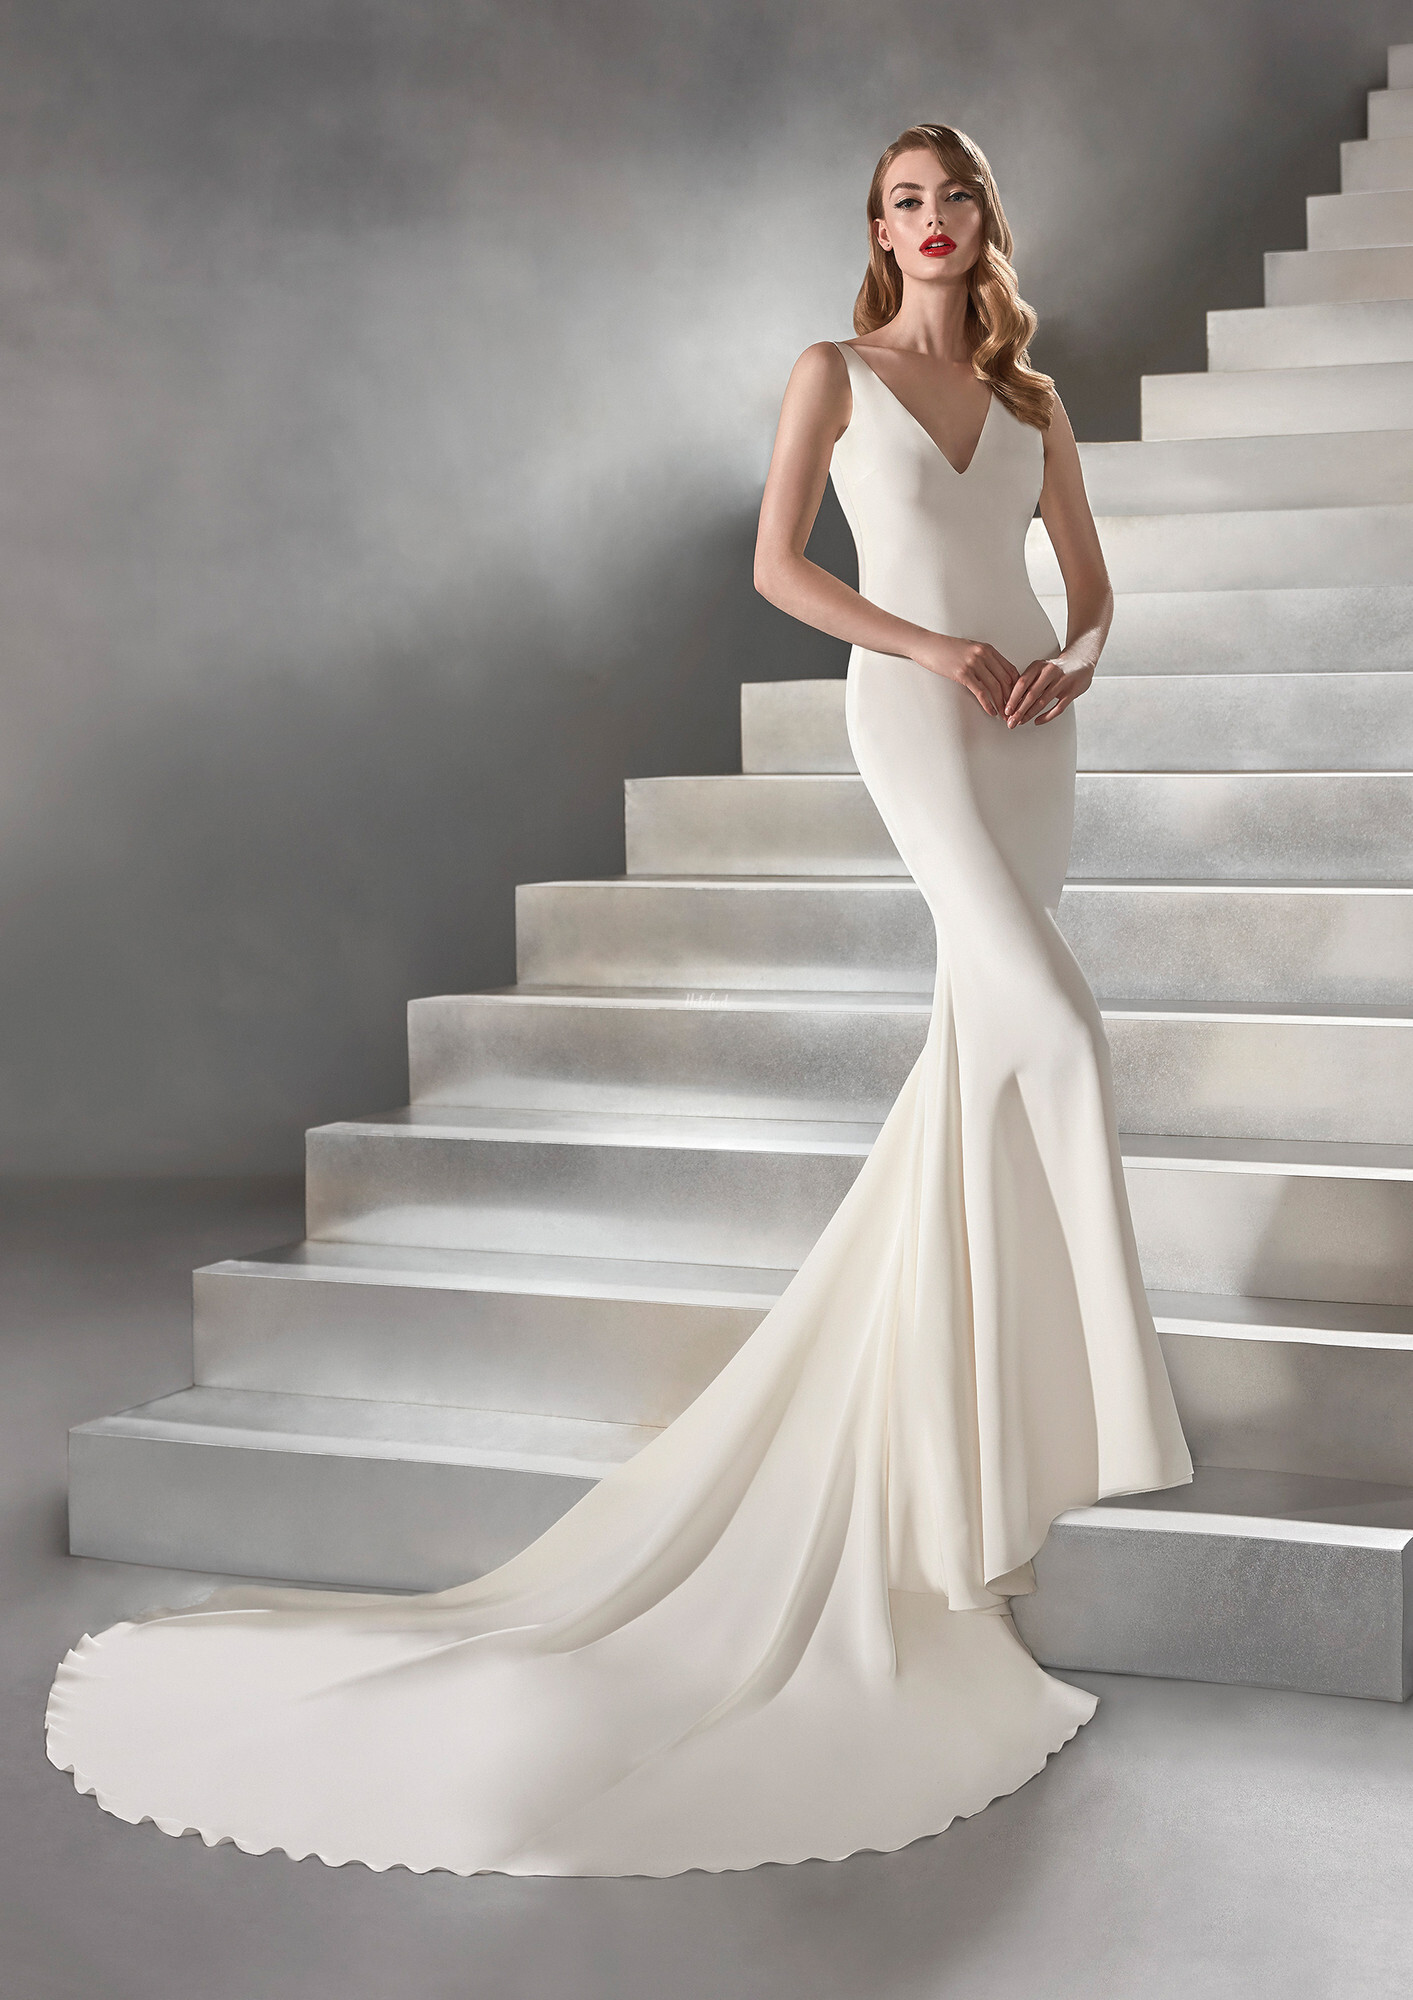 HISPALIS Wedding Dress from Atelier Pronovias hitched.co.uk